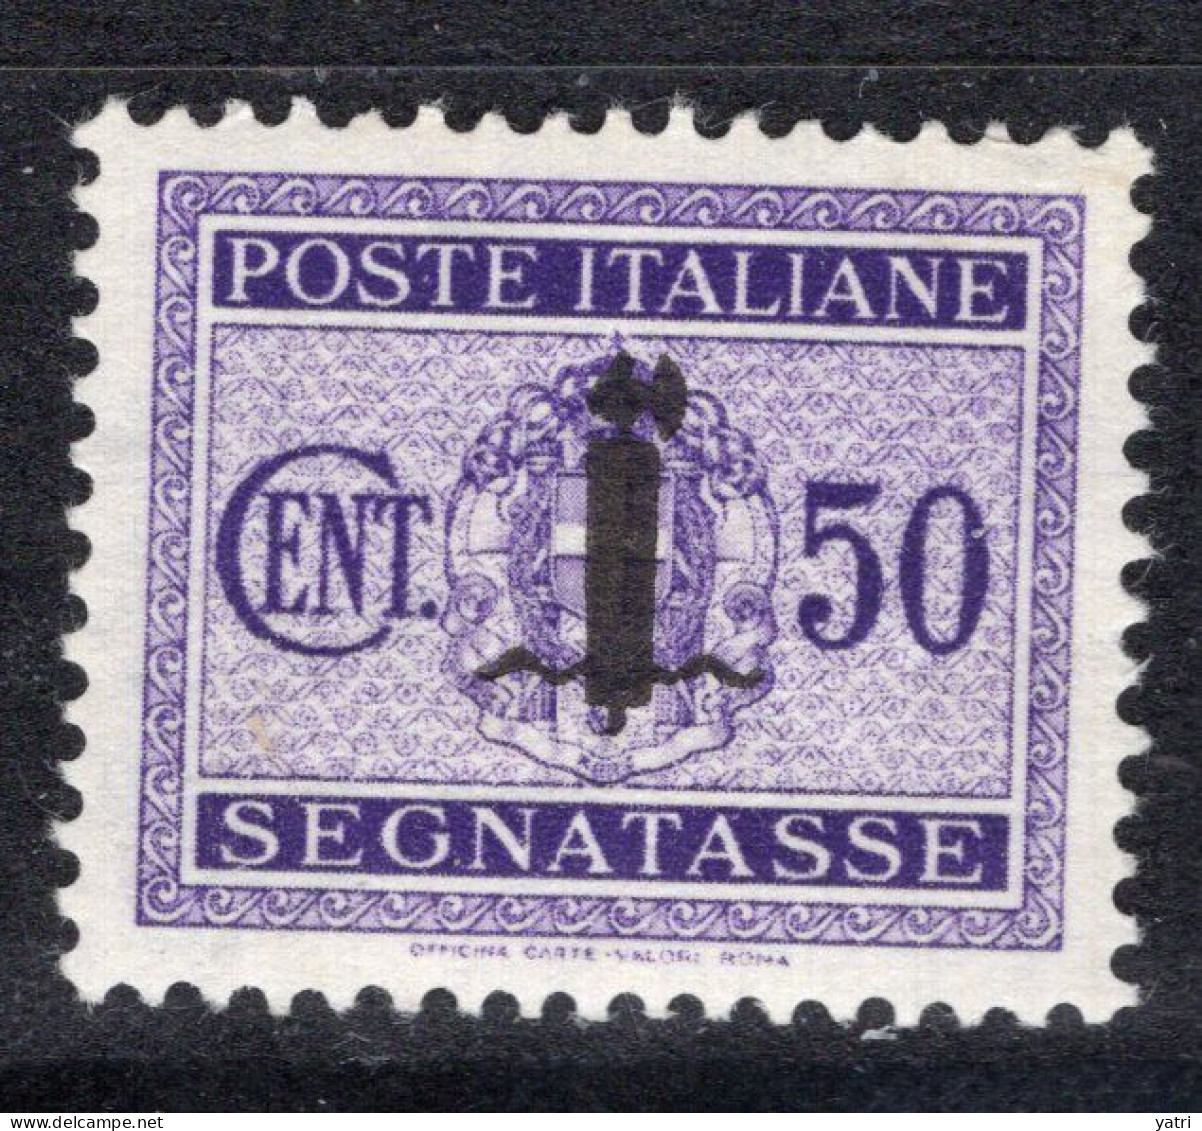 Repubblica Sociale Italiana - Segnatasse 50 Centesimi * MH - Segnatasse